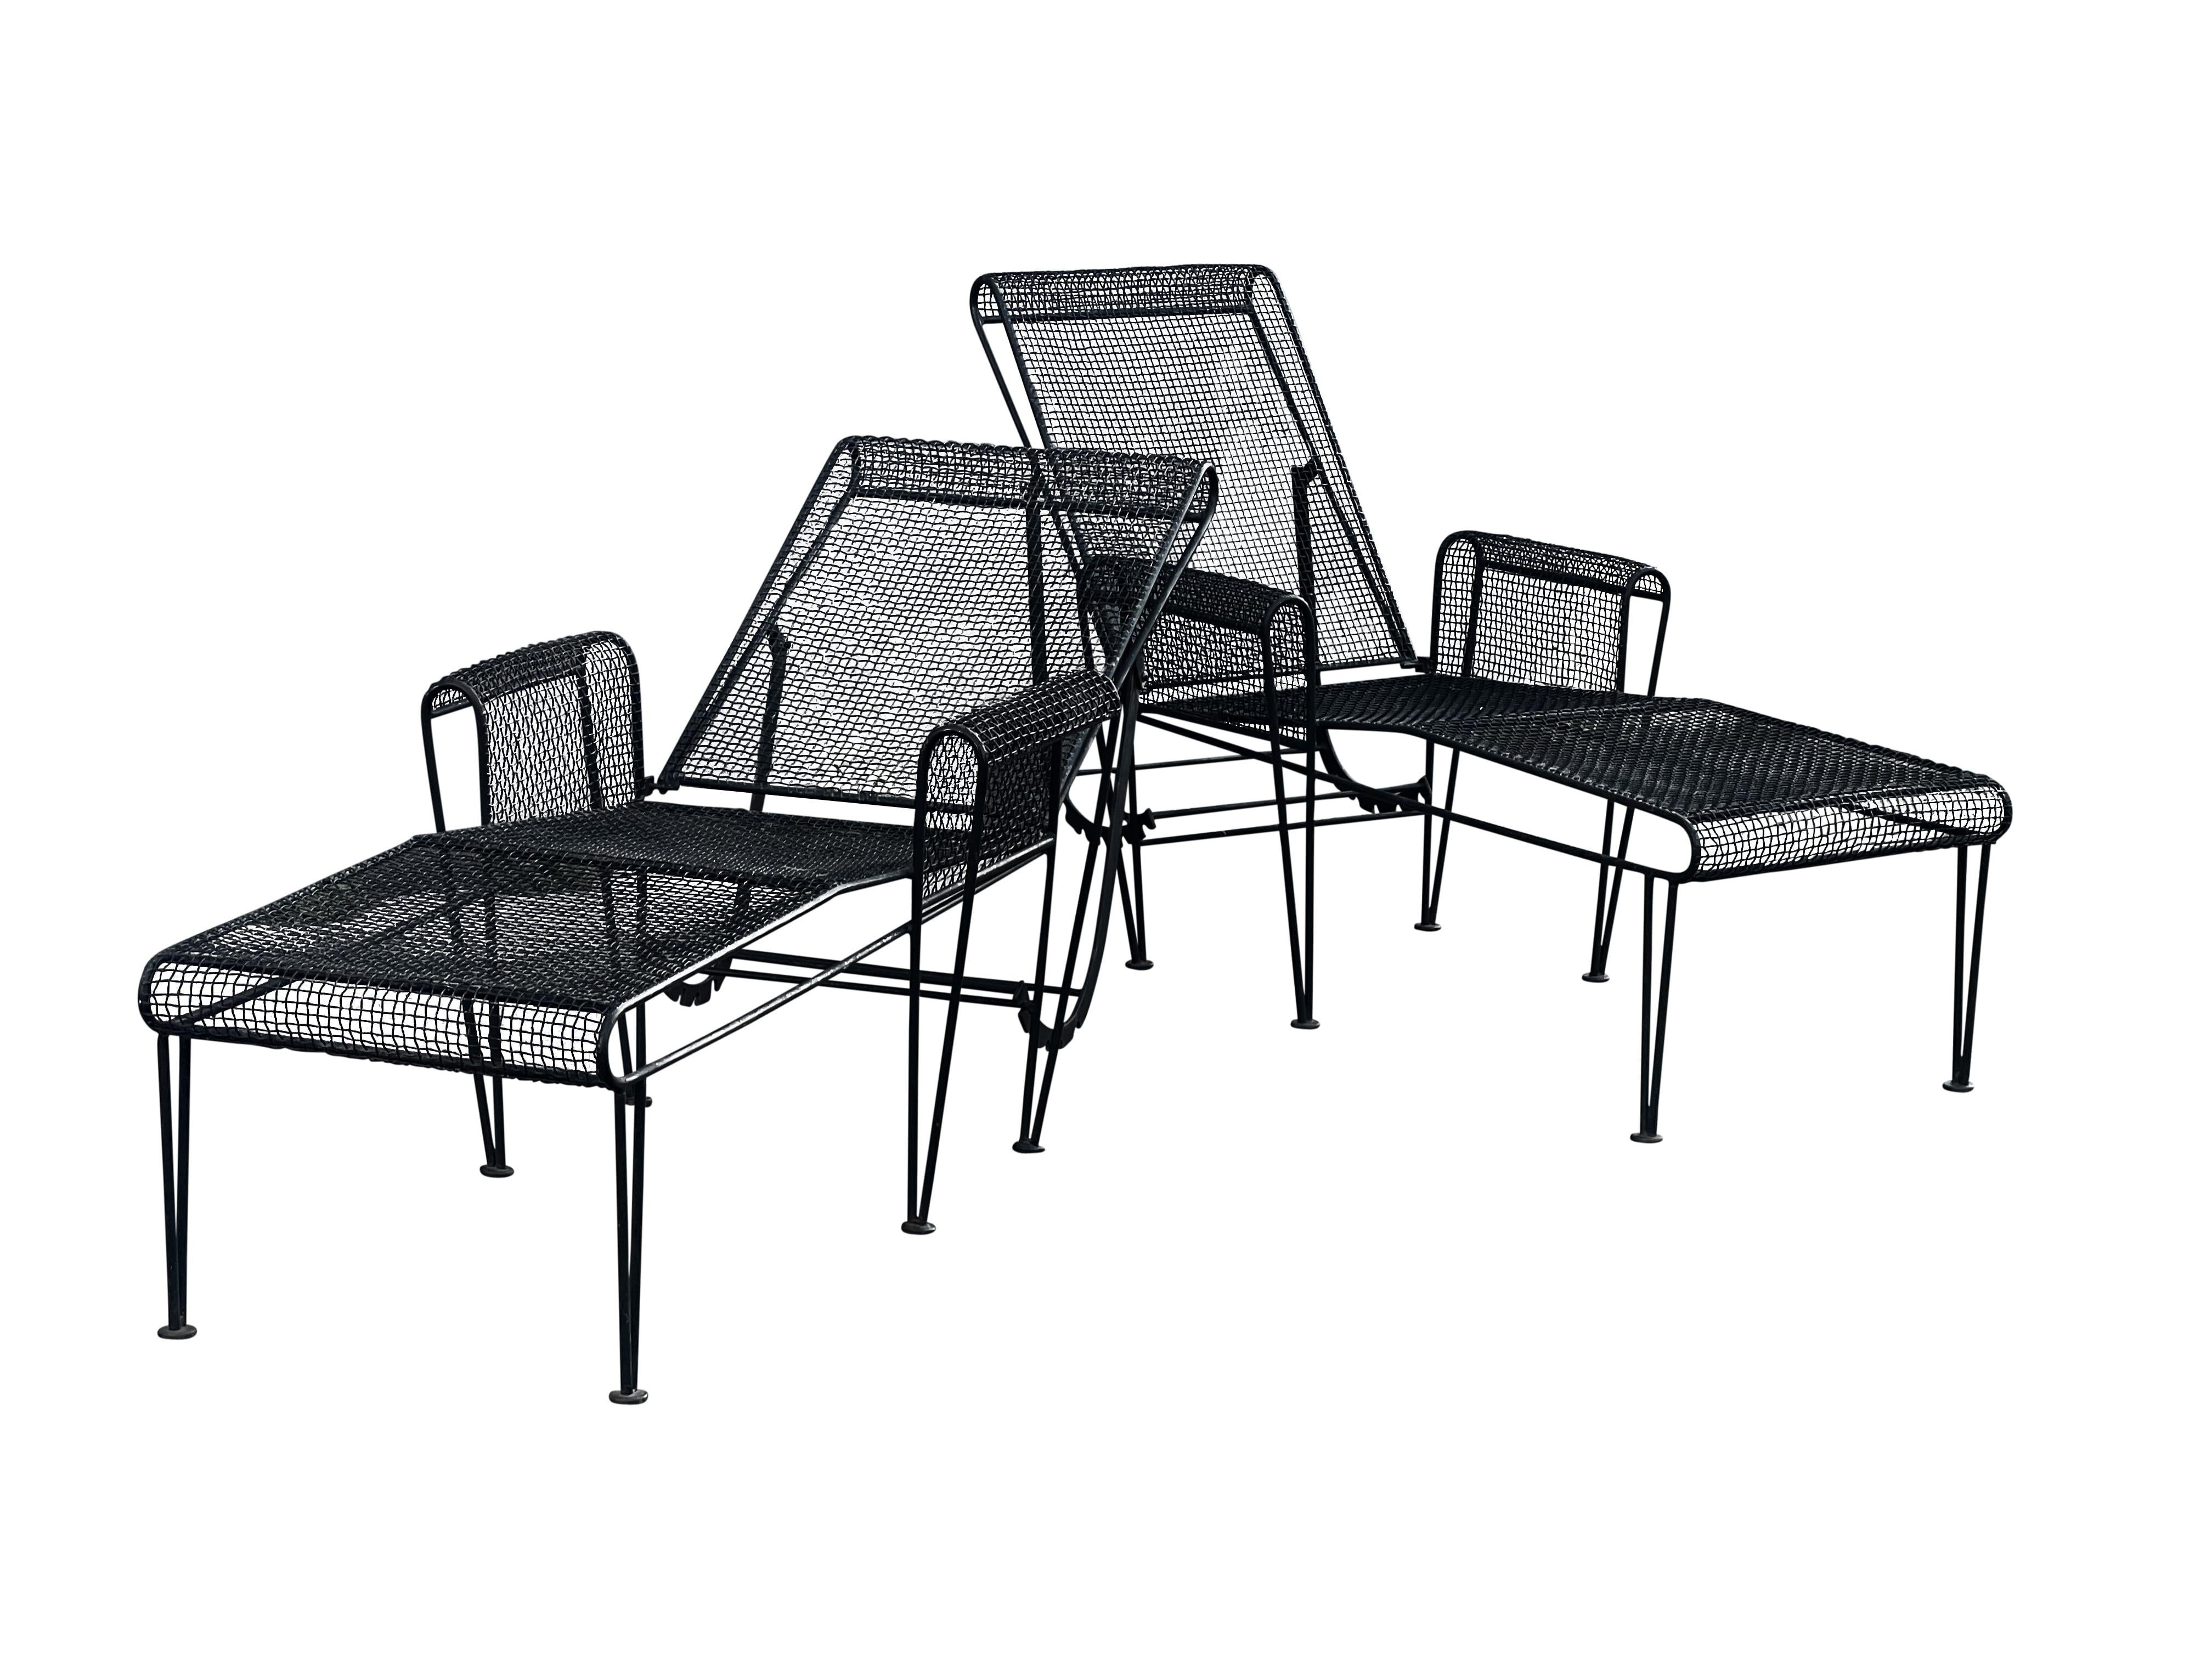 Originaire d'Owosso, dans le Michigan, Rever est une marque américaine vénérée, qui fabrique à la main des meubles en fer et en aluminium robustes. Cet ensemble de chaises longues est un modèle rare et précoce de Woodard, illustrant l'éthique de